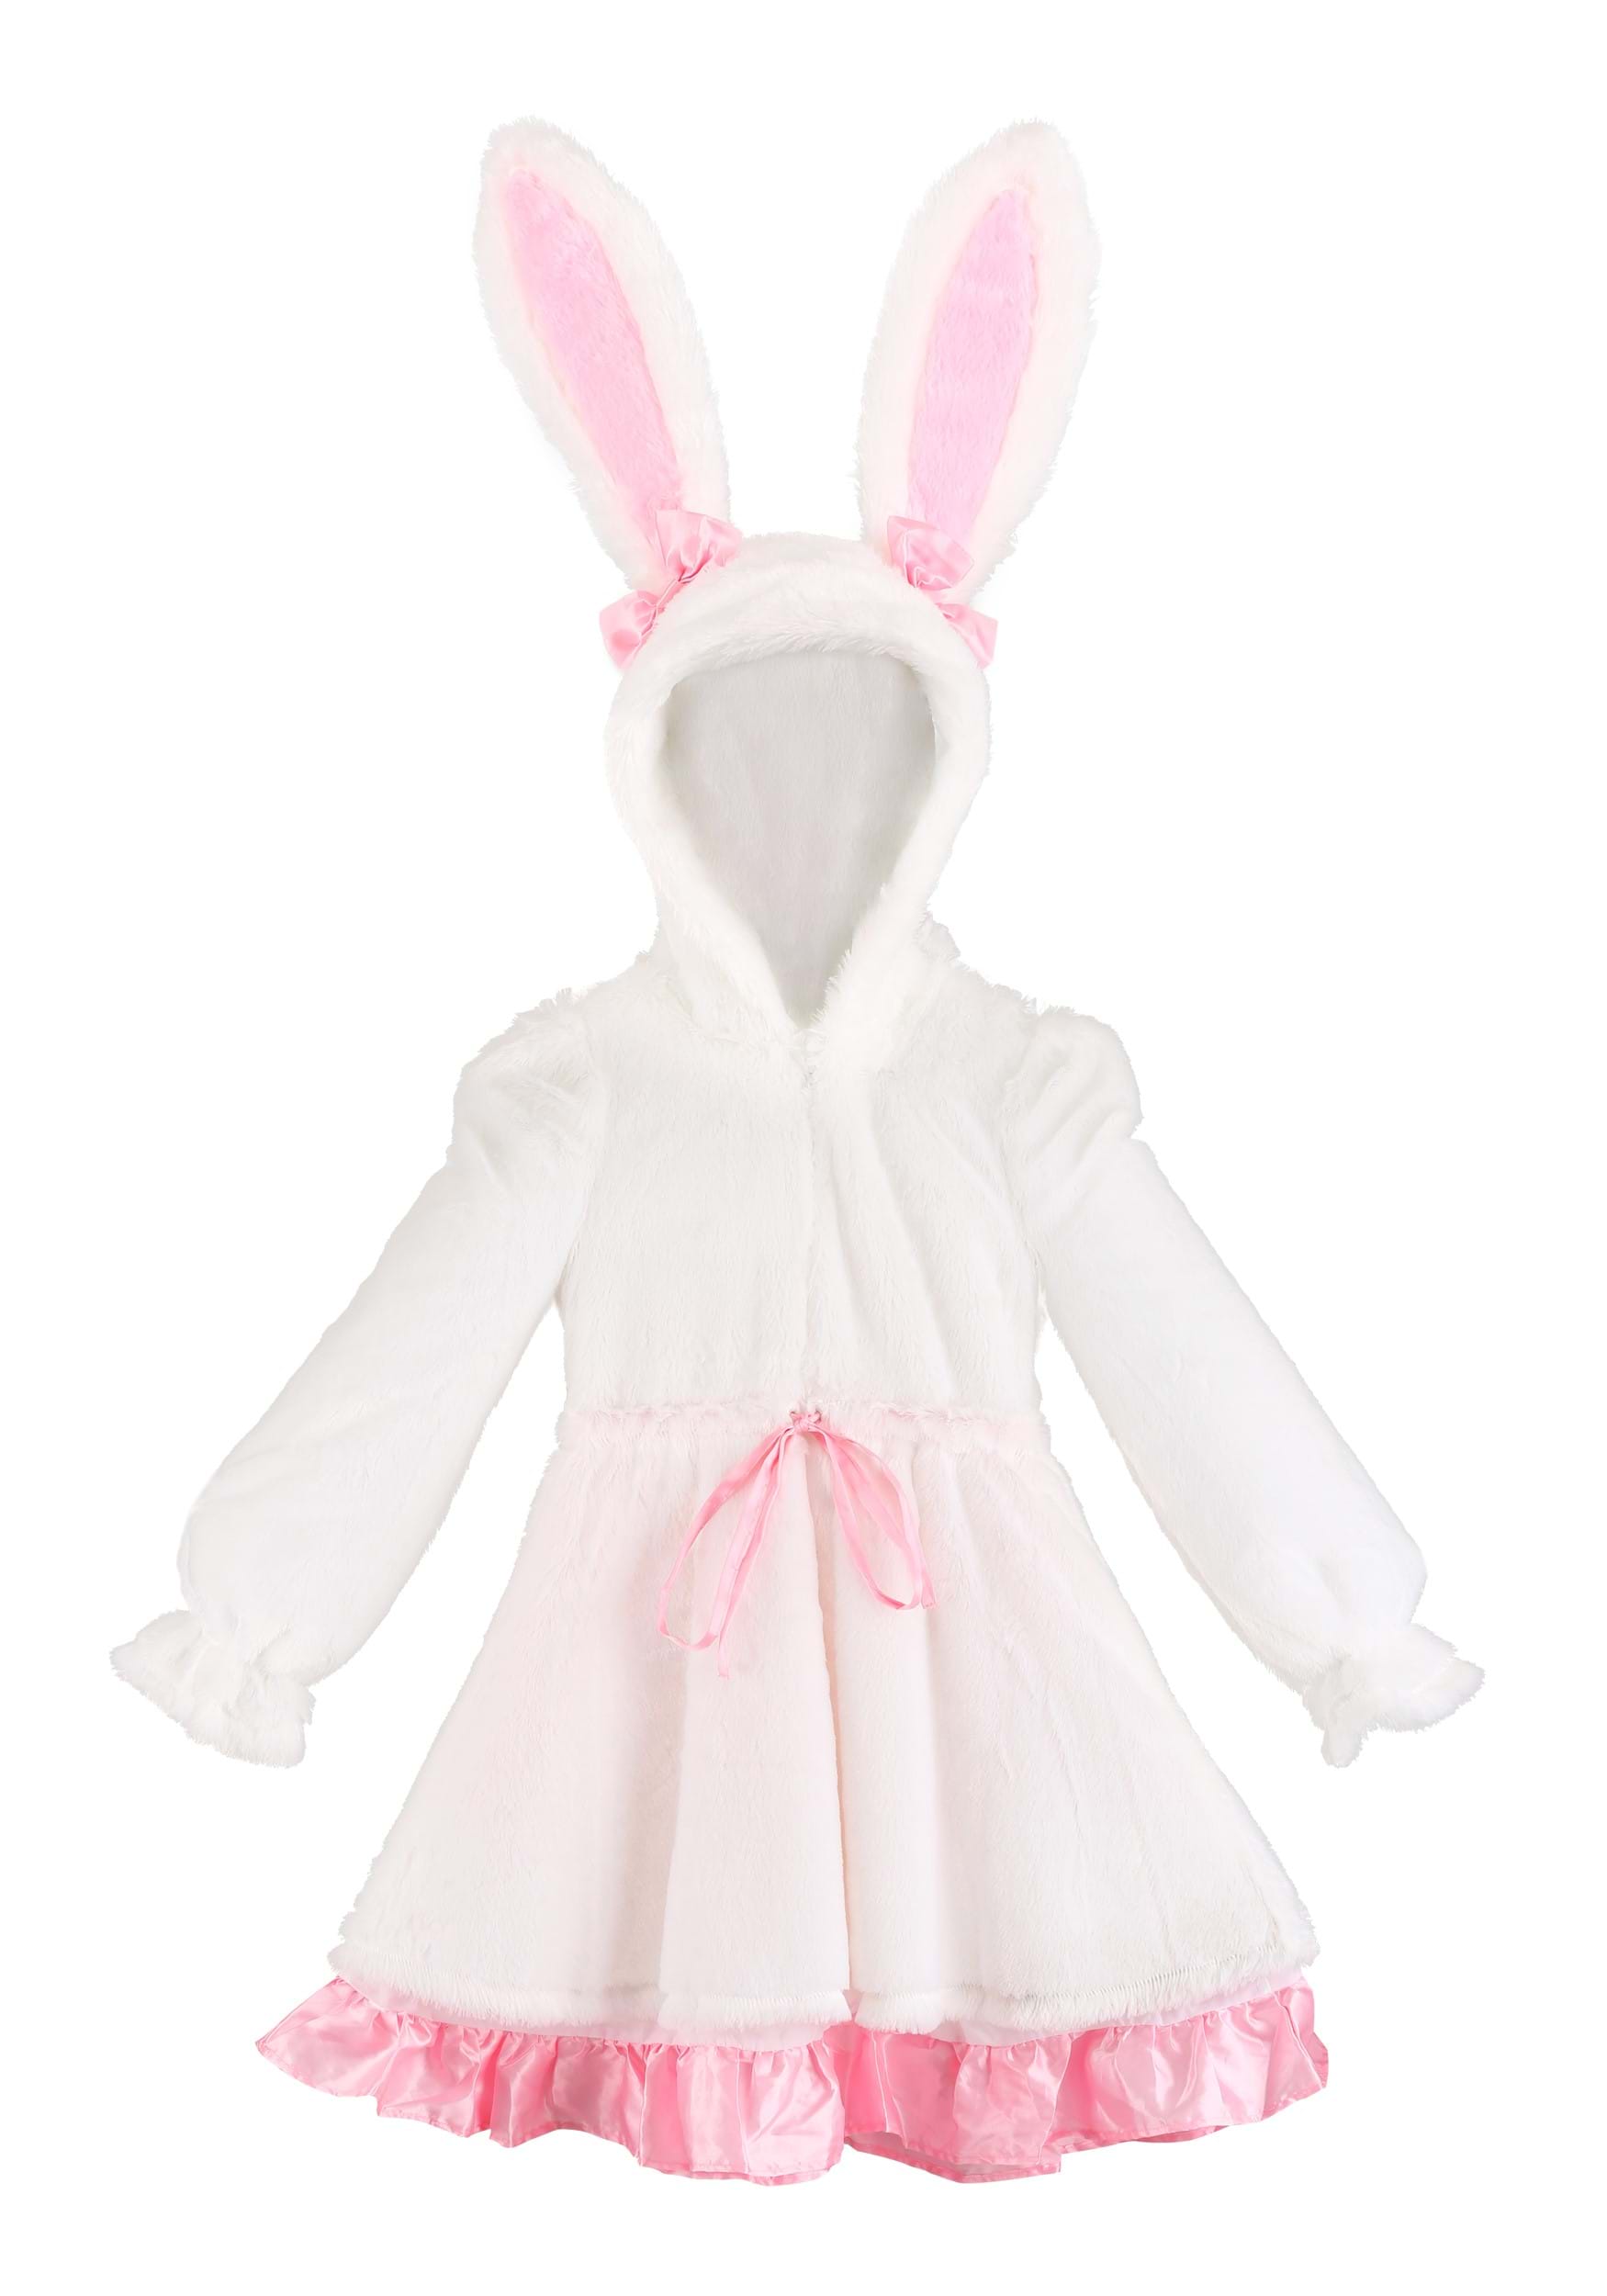 Fuzzy White Rabbit Hooded Costume Dress For Girl's